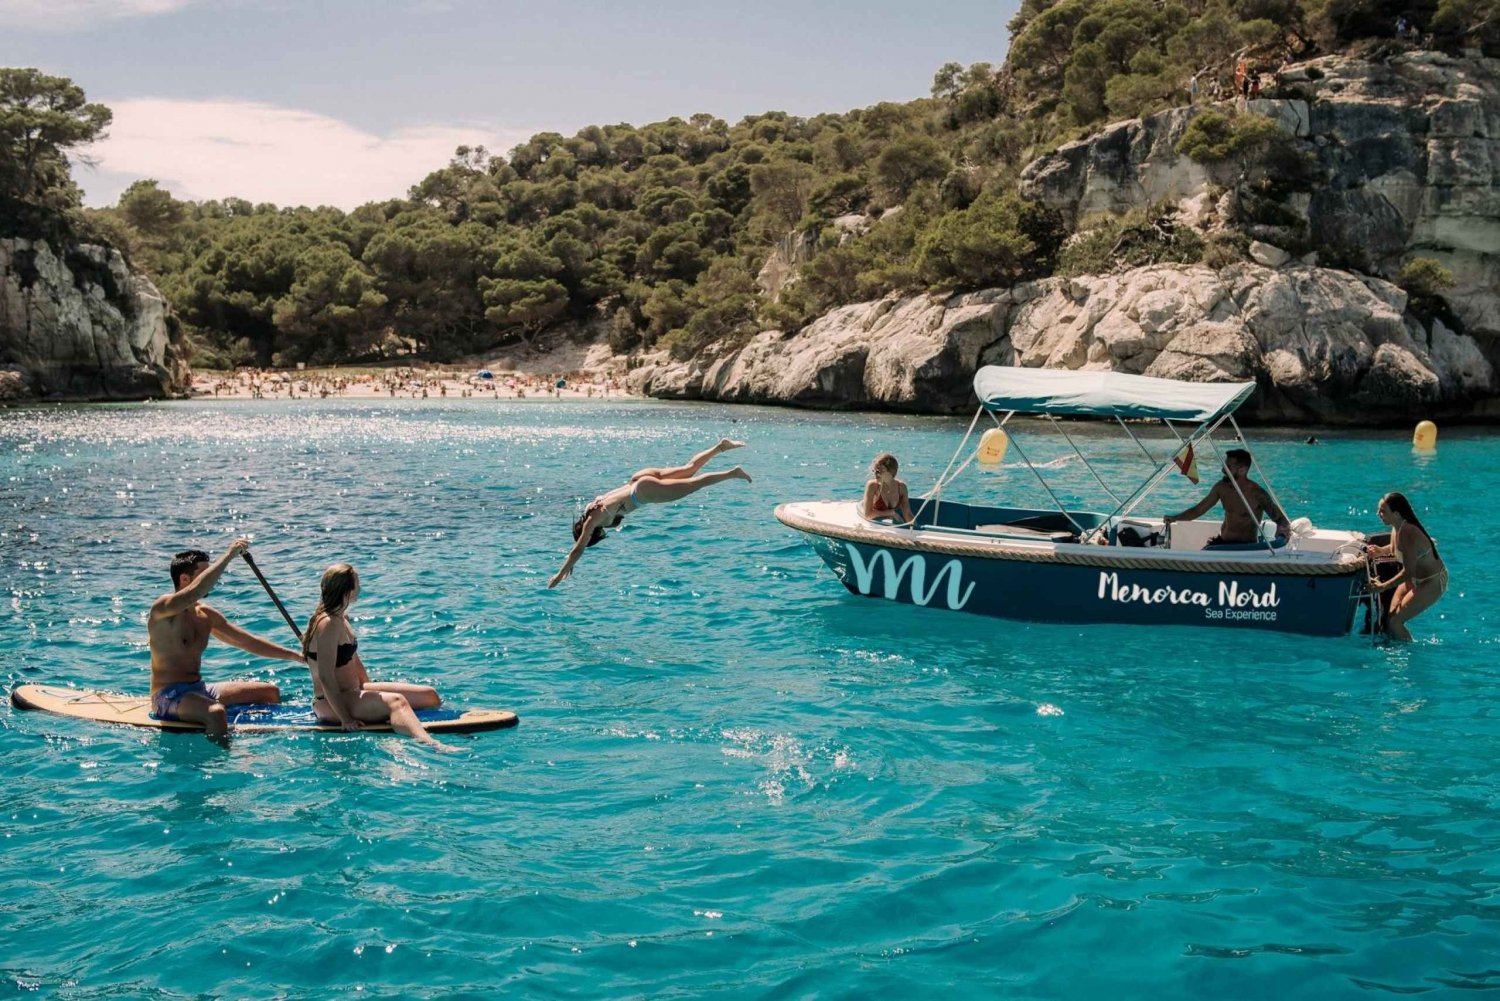 Menorca: Privat båtuthyrning utan obligatoriskt körkort